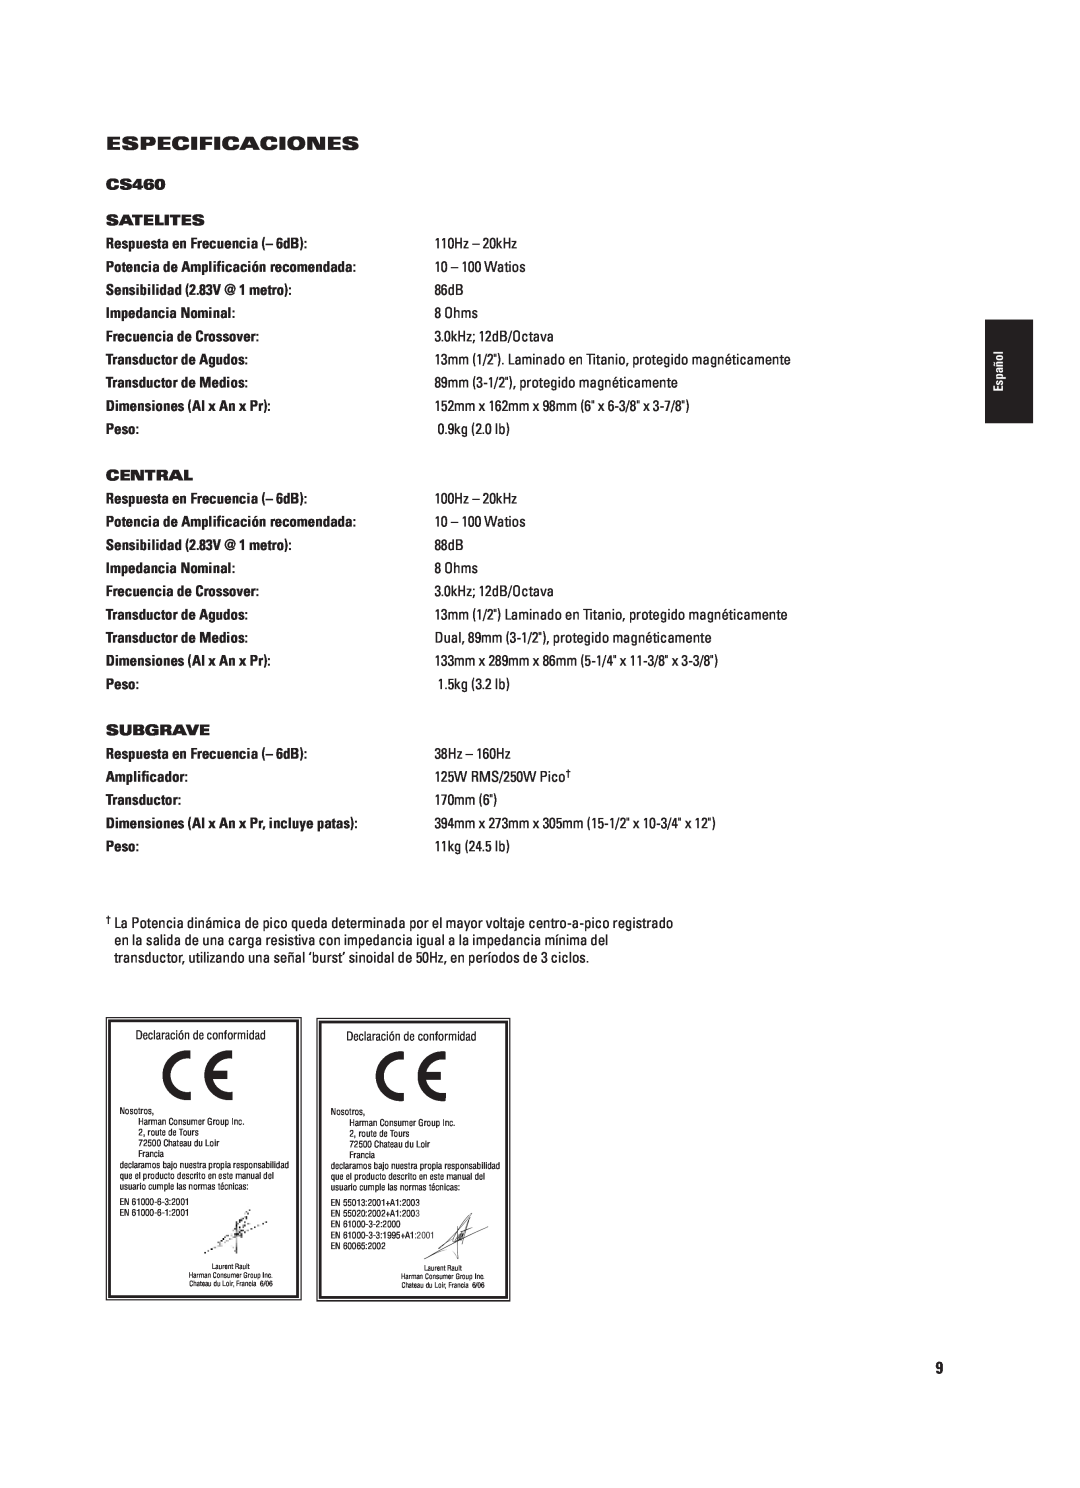 JBL CS460 (230V) Especificaciones, Satelites, Respuesta en Frecuencia - 6dB, Potencia de Amplificación recomendada, Peso 